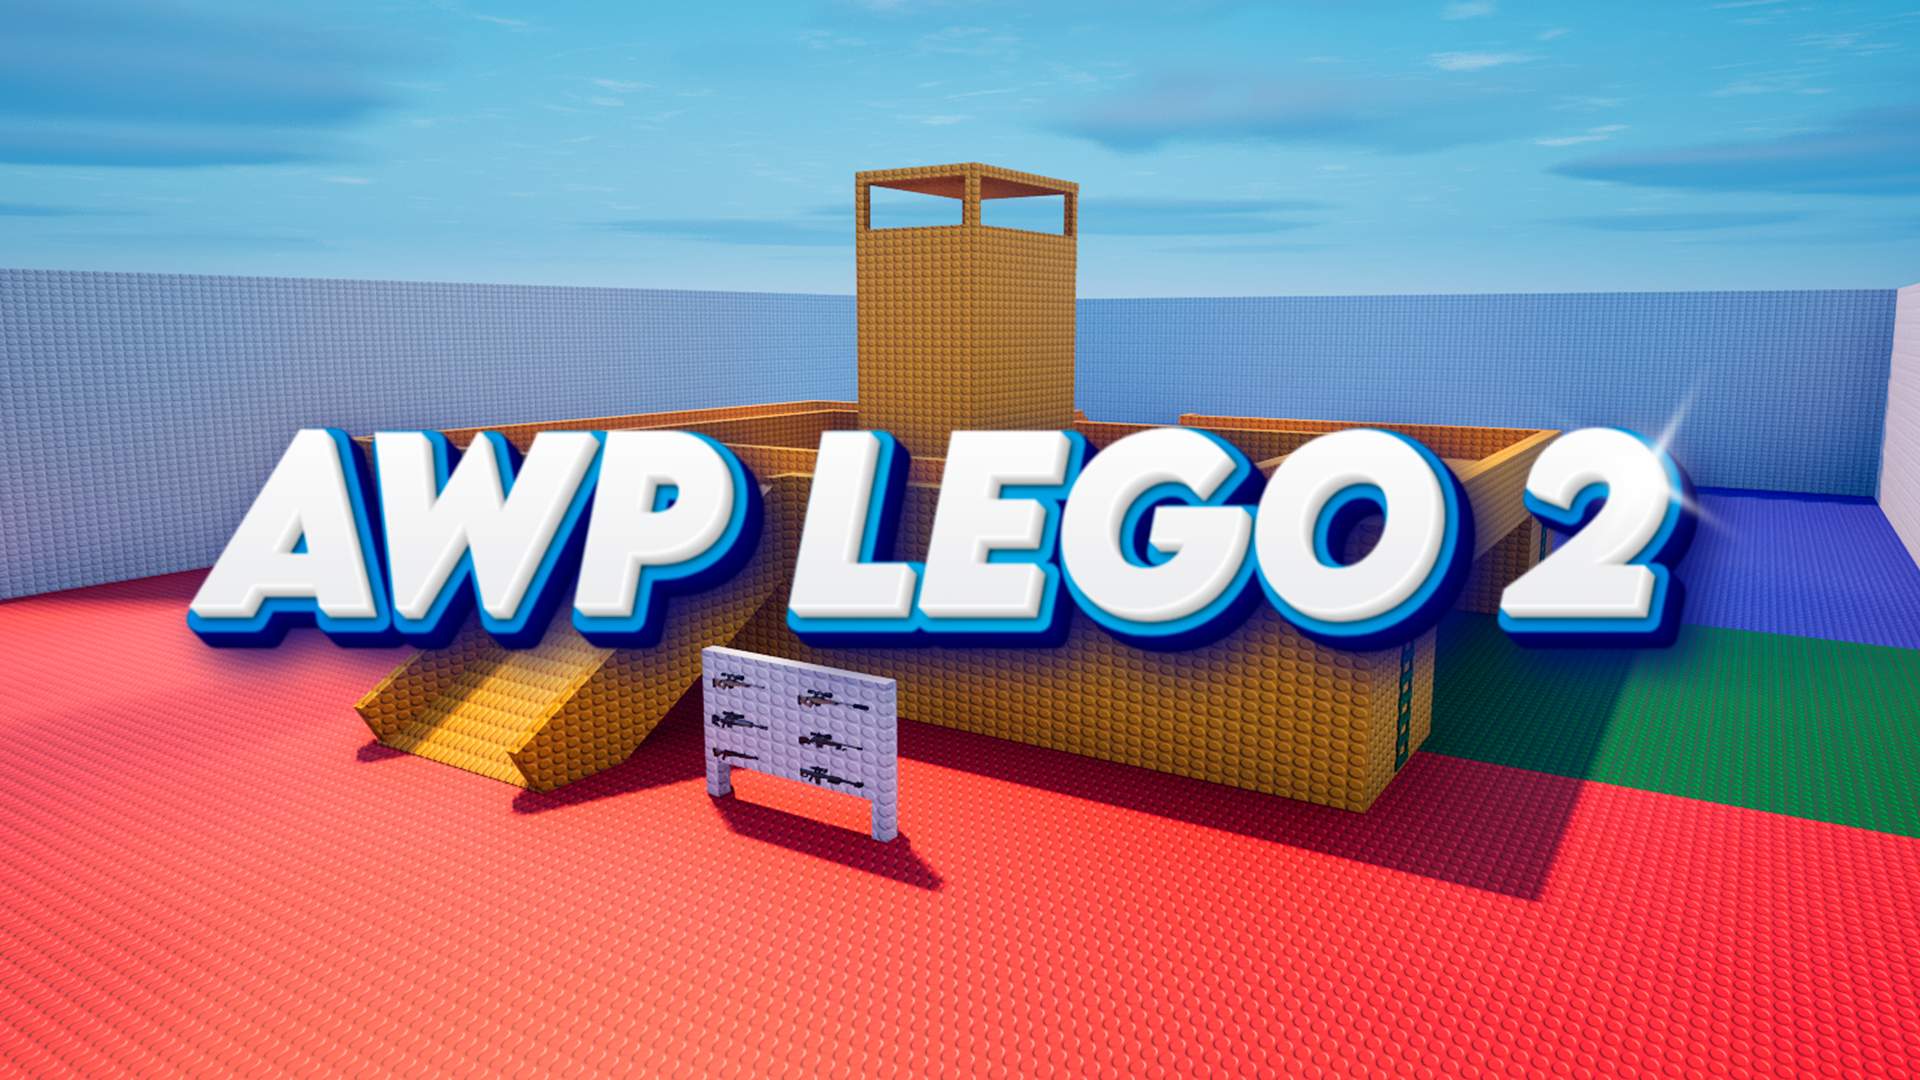 AWP LEGO 2 | 1 V 1